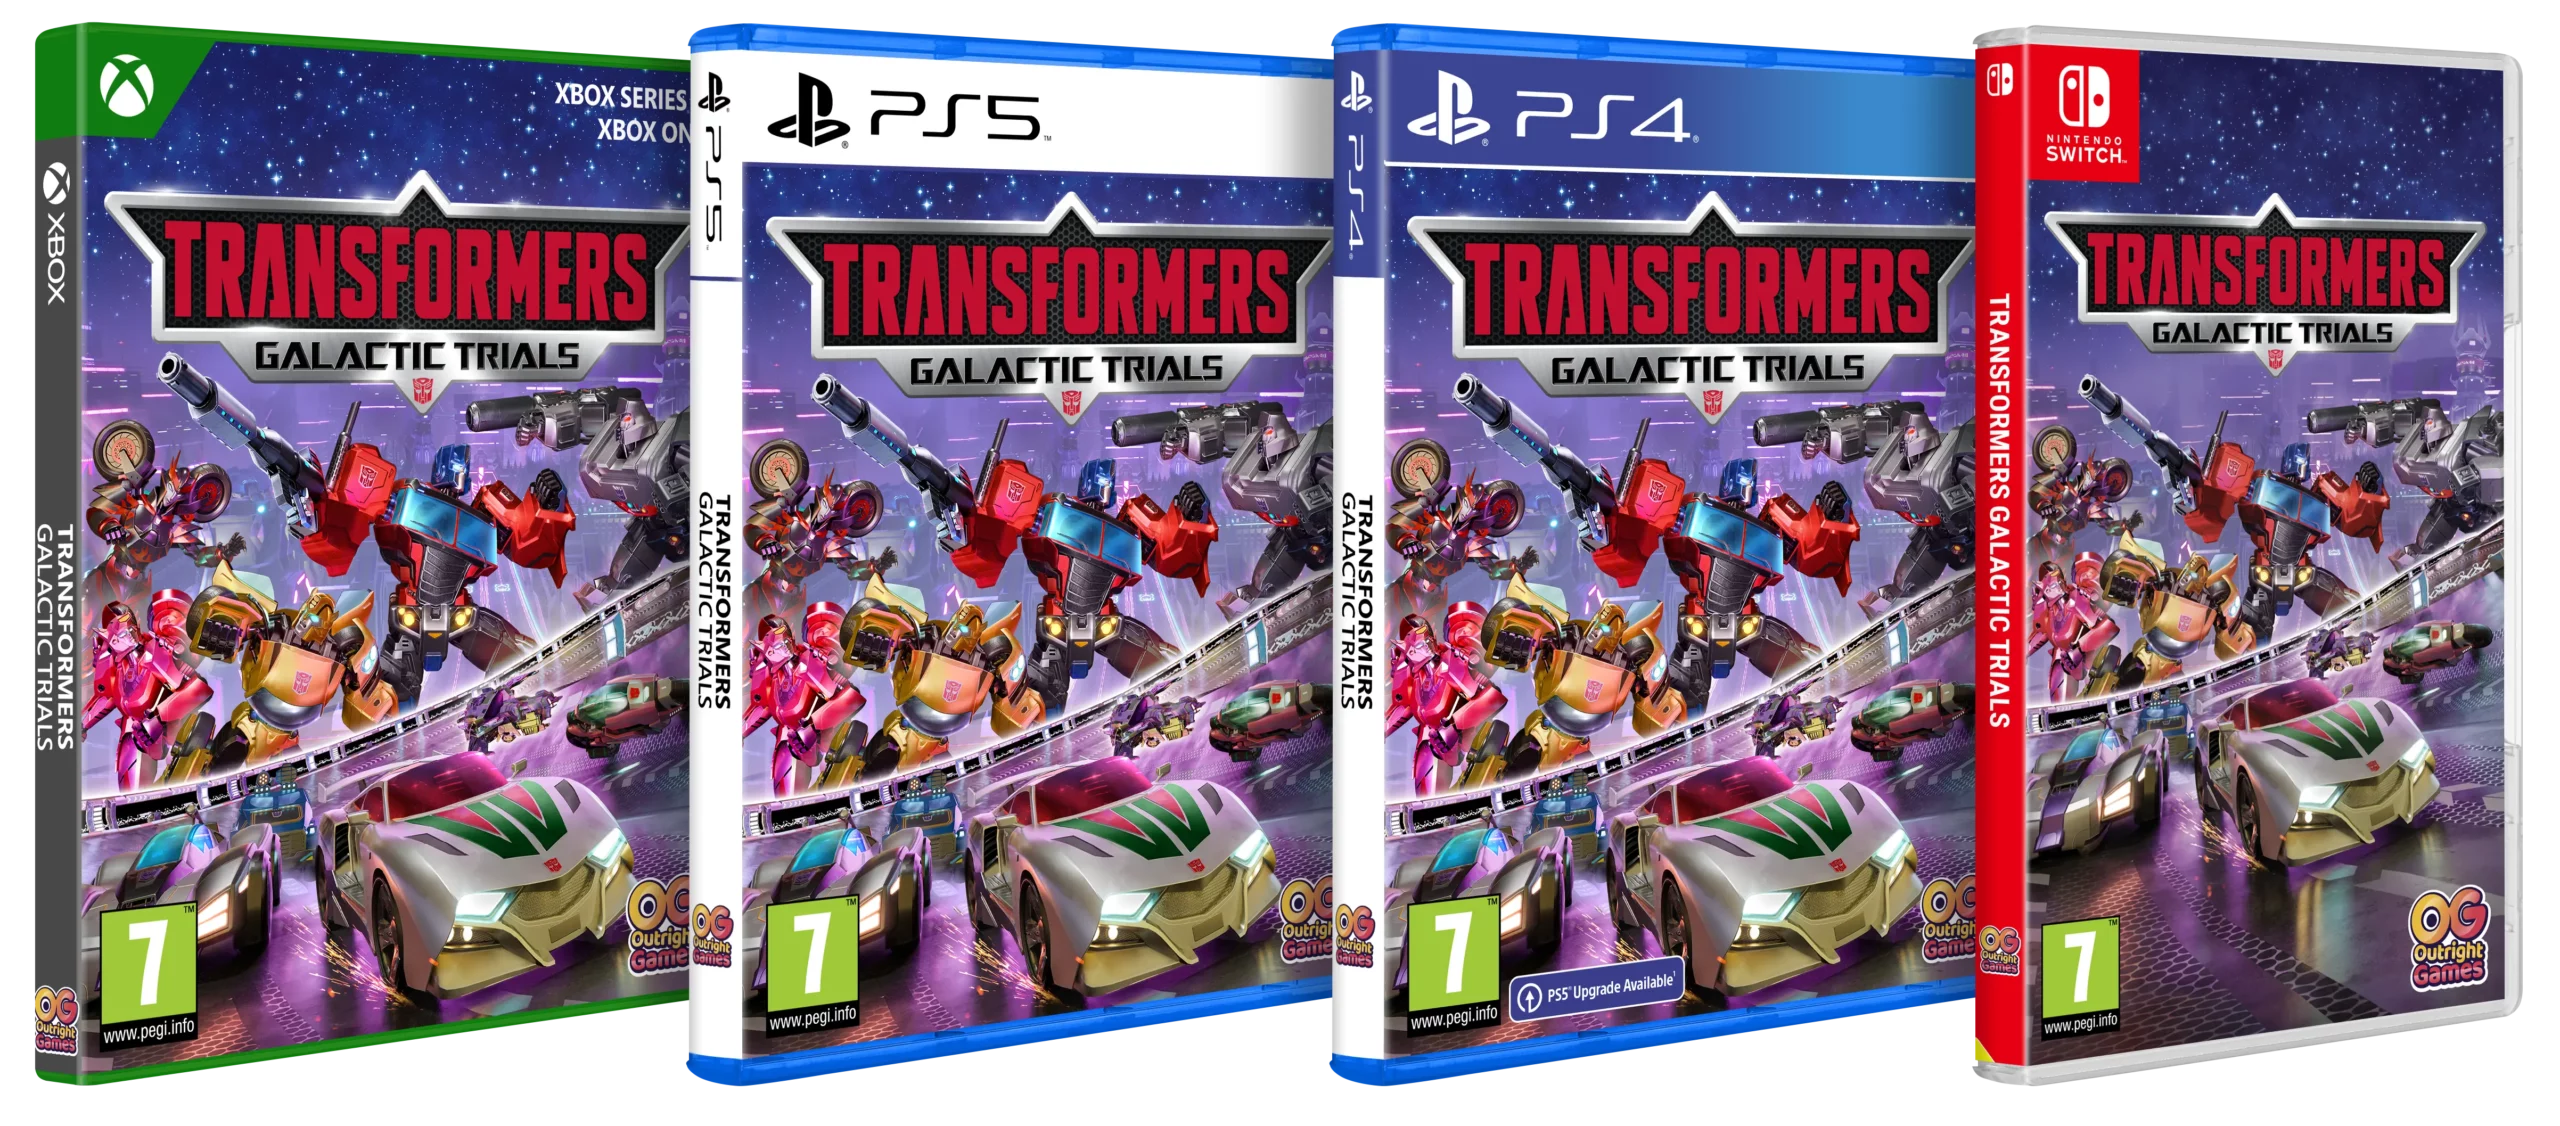 Transformers Galactic Trials Packshot UK